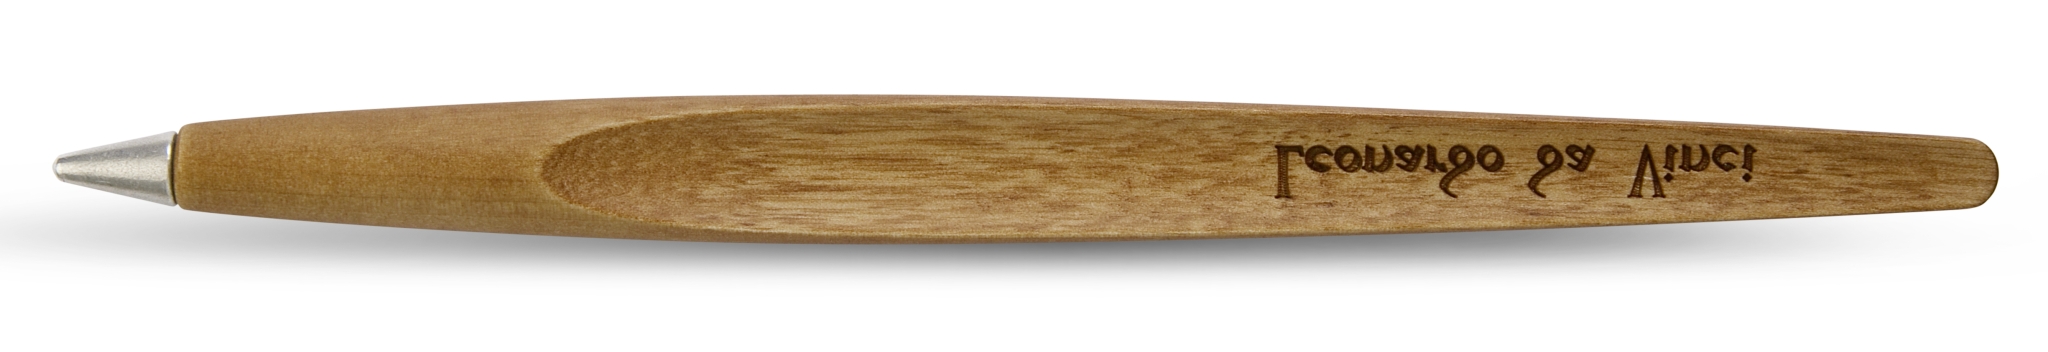 Вечная ручка Pininfarina Piuma LEONARDO PEAR WOOD, серебристый, сталь, дерево груша